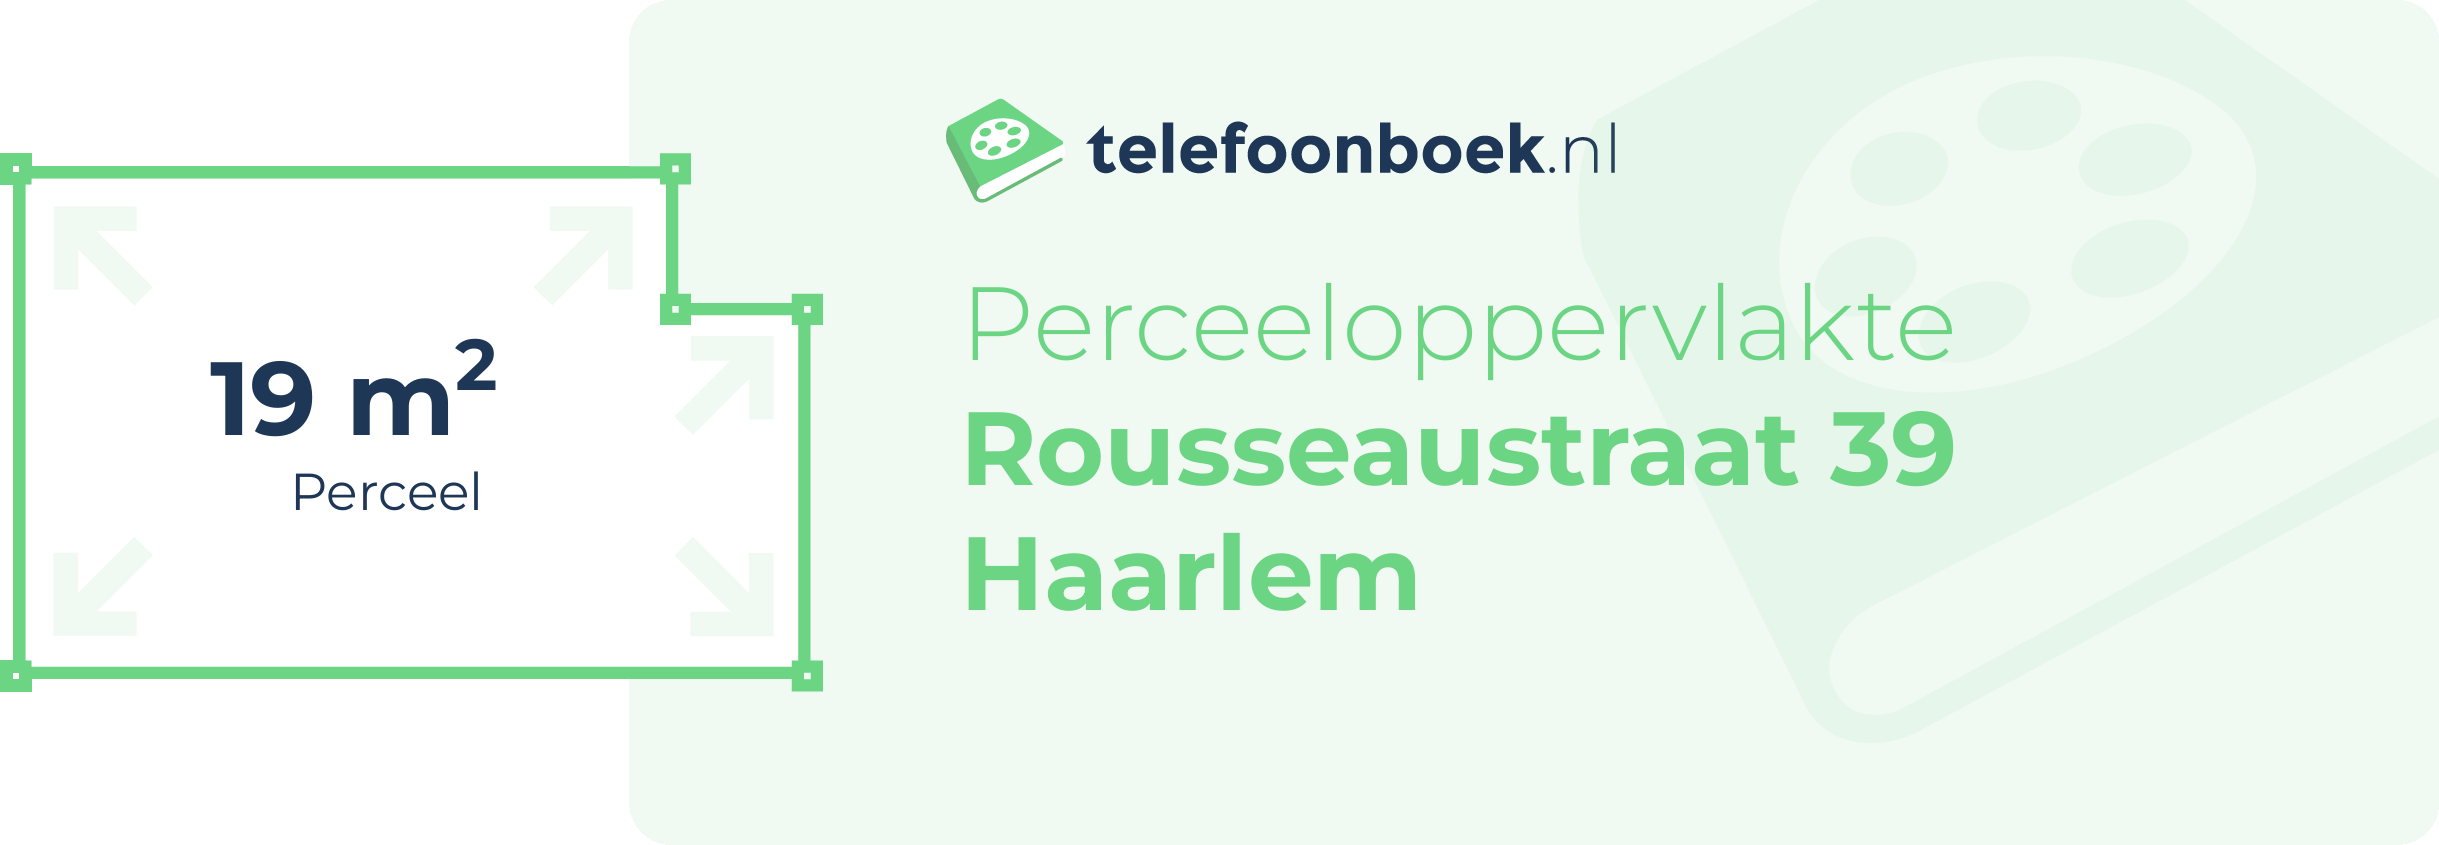 Perceeloppervlakte Rousseaustraat 39 Haarlem